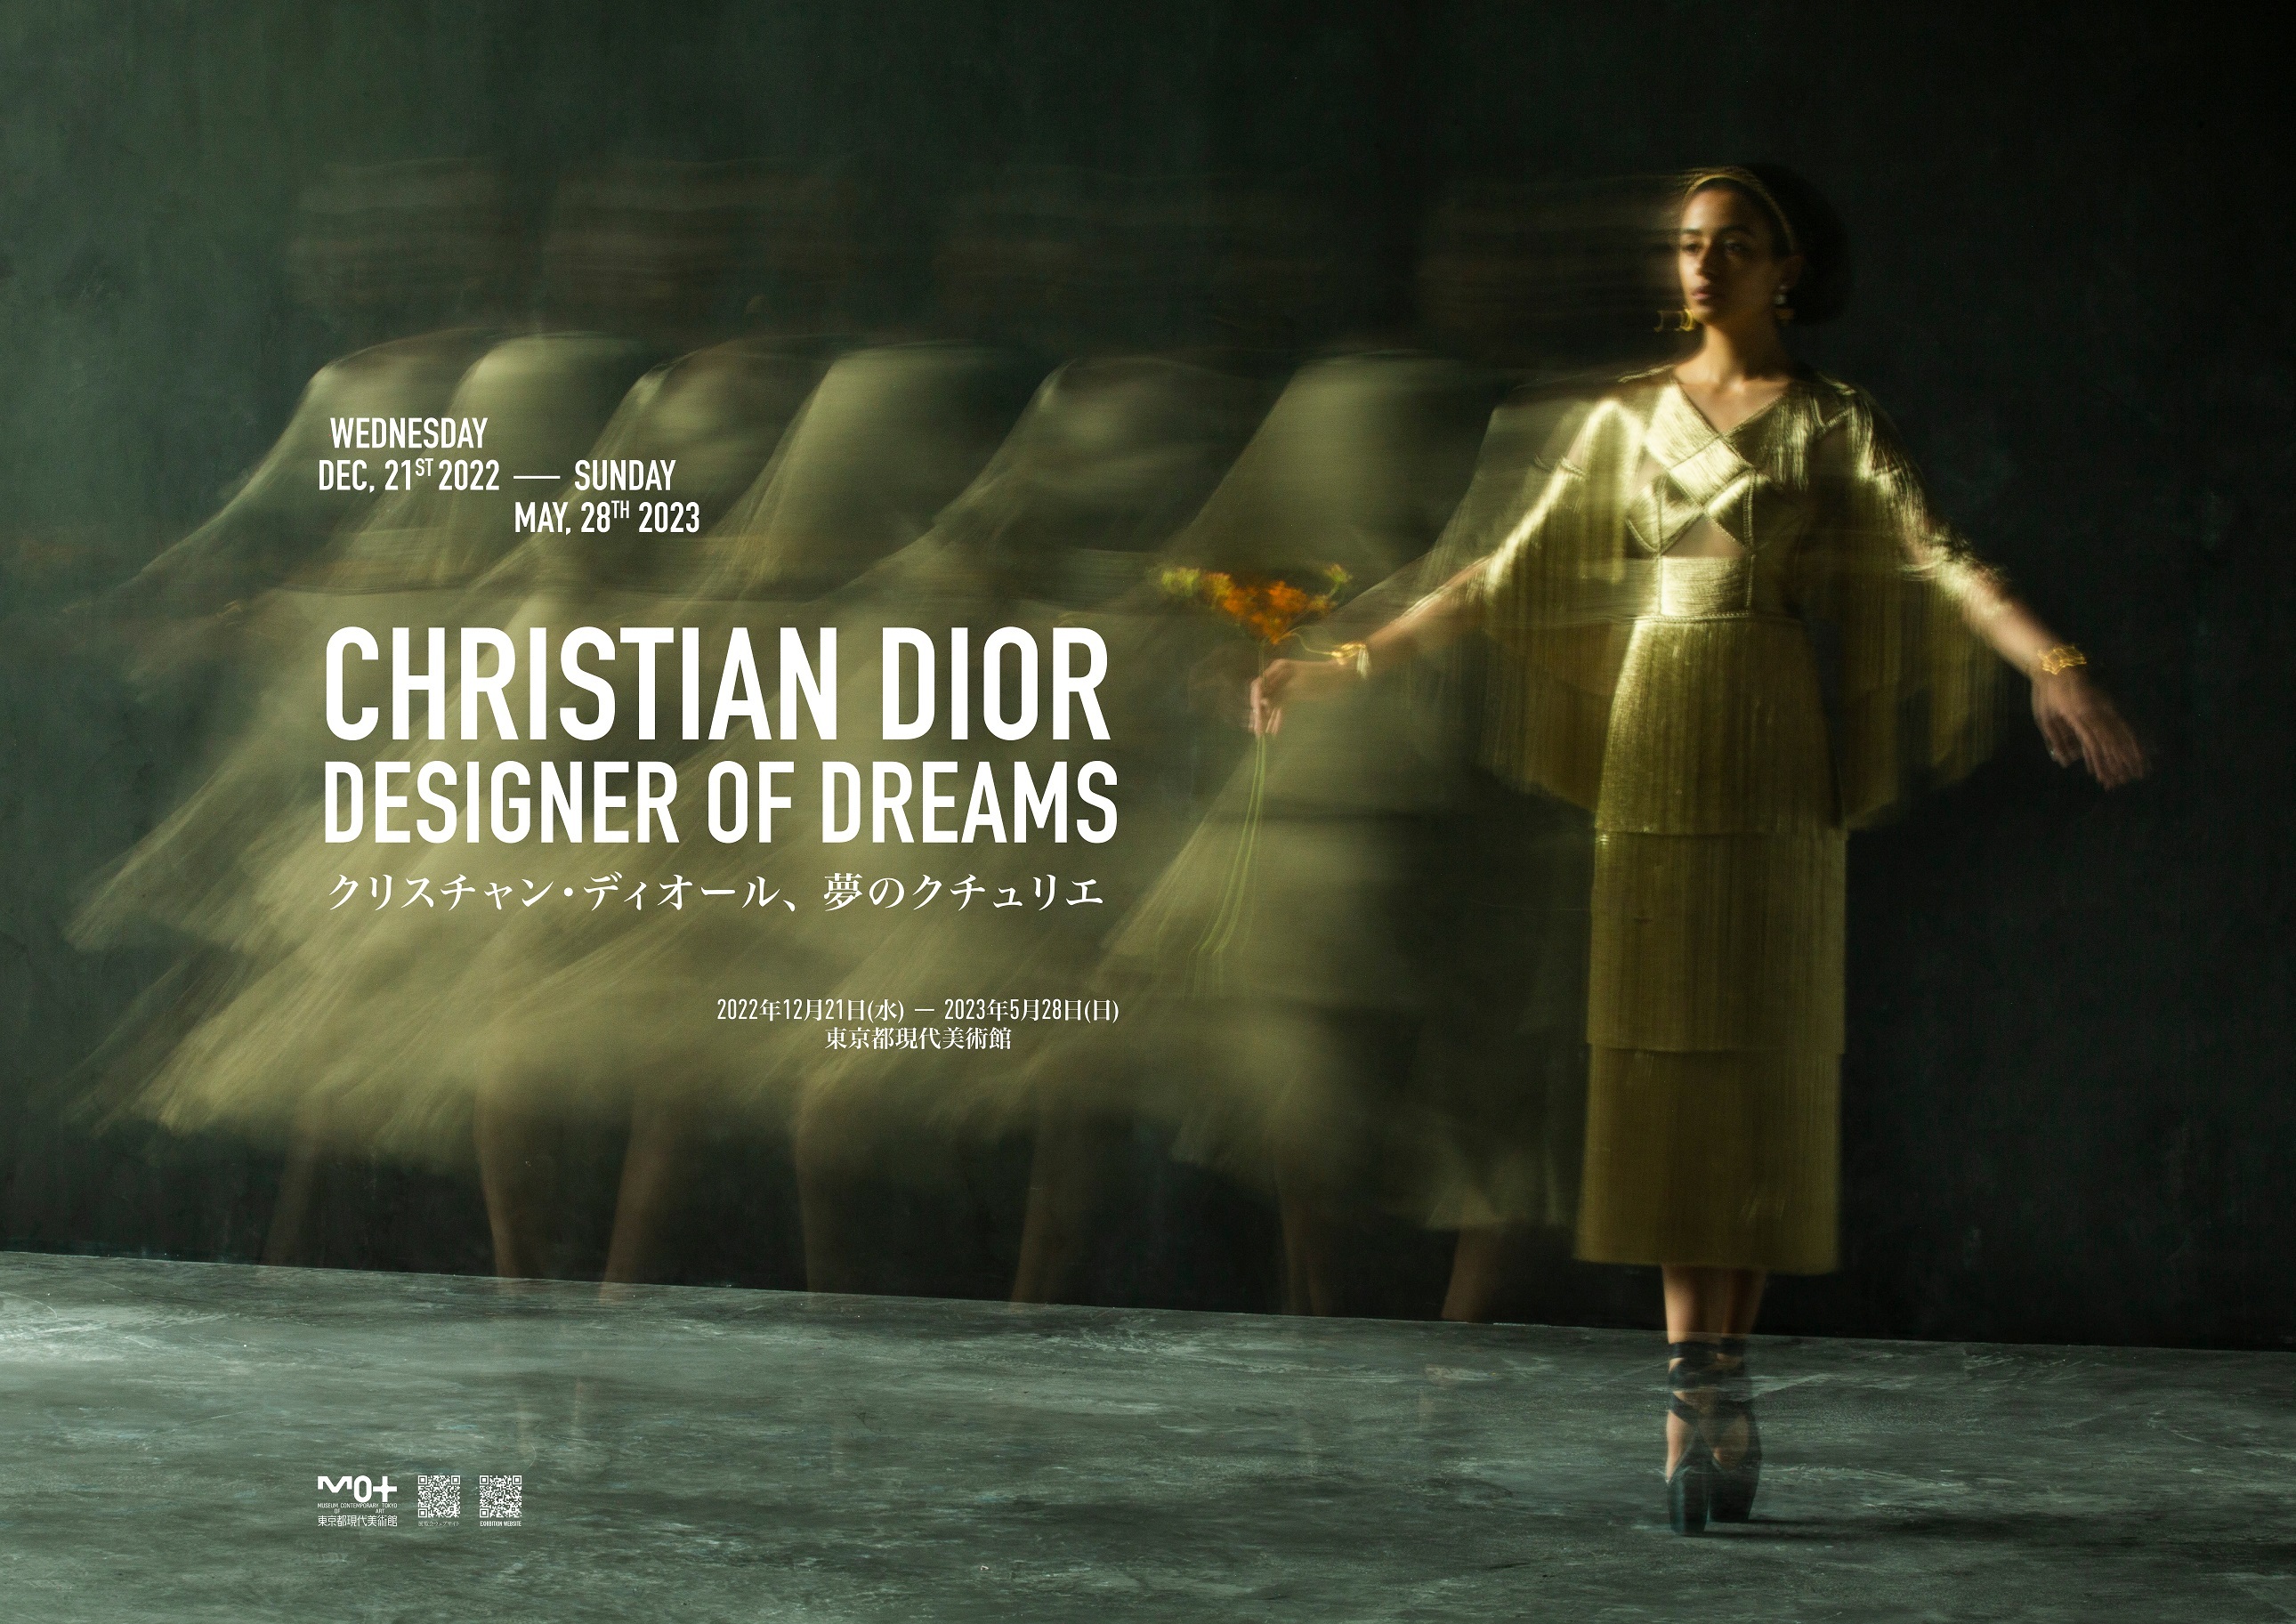 『クリスチャン・ディオール、夢のクチュリエ』展